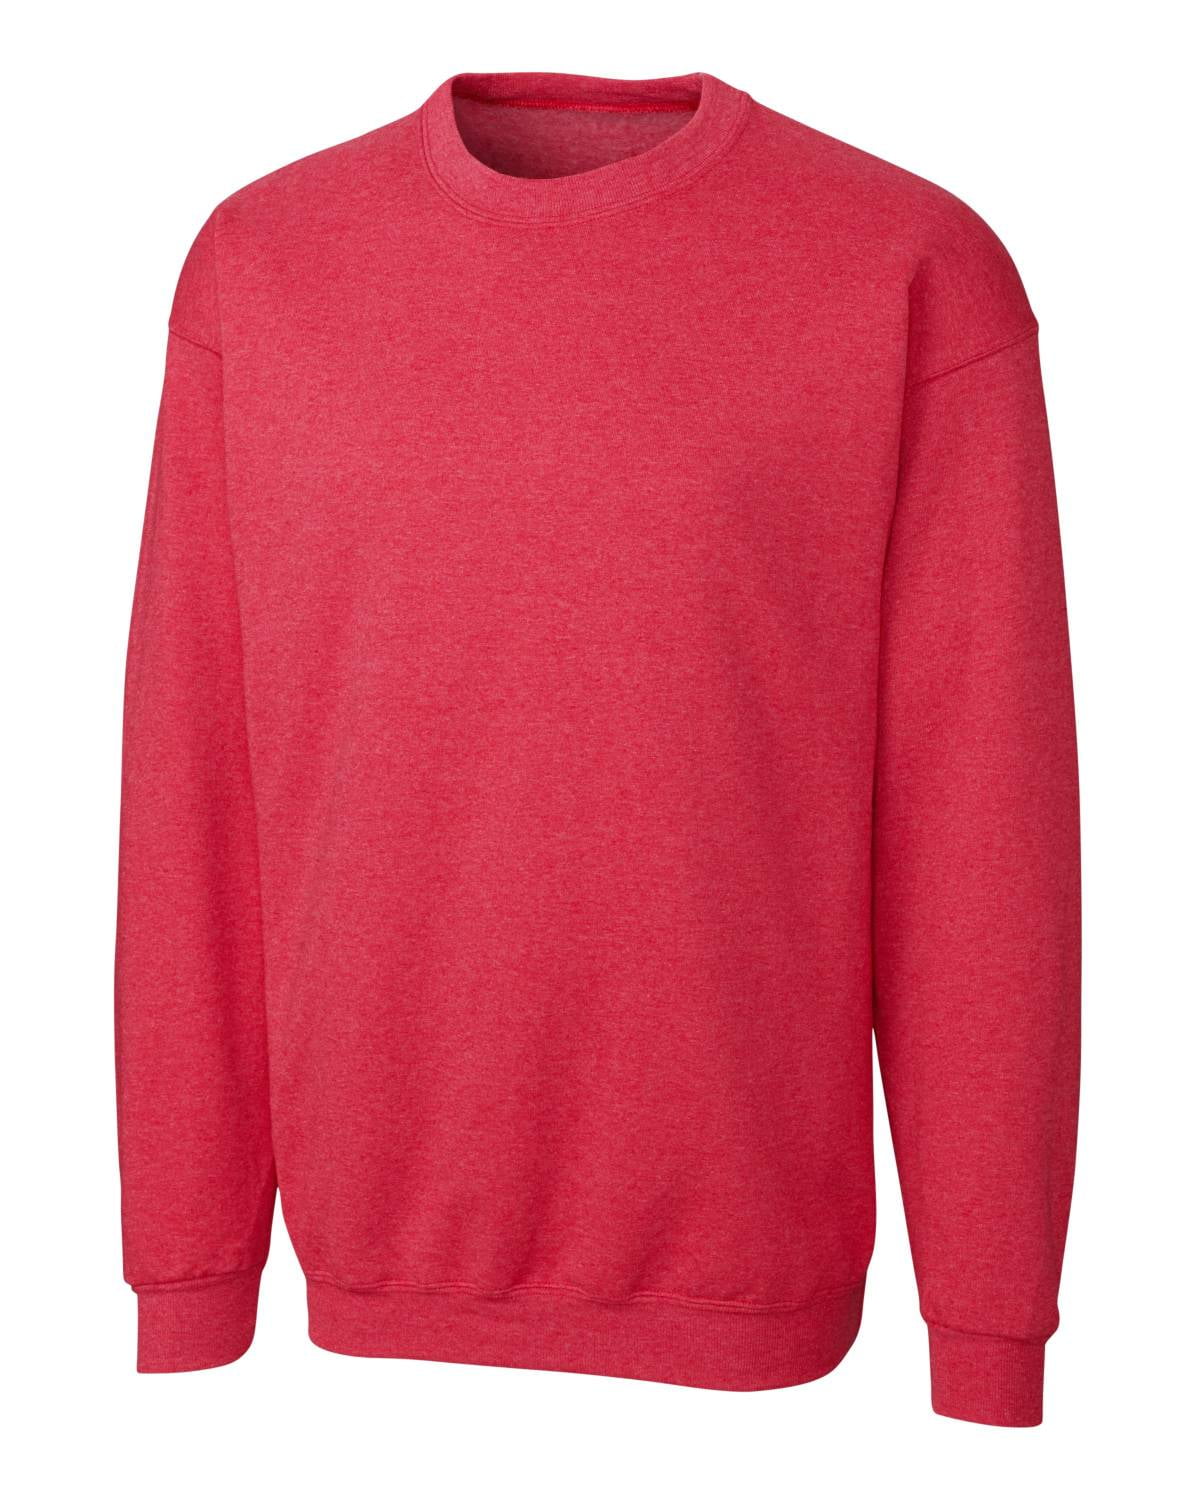 clique basics crewneck sweatshirt mrk01001 by cutter & buck - Walmart.com